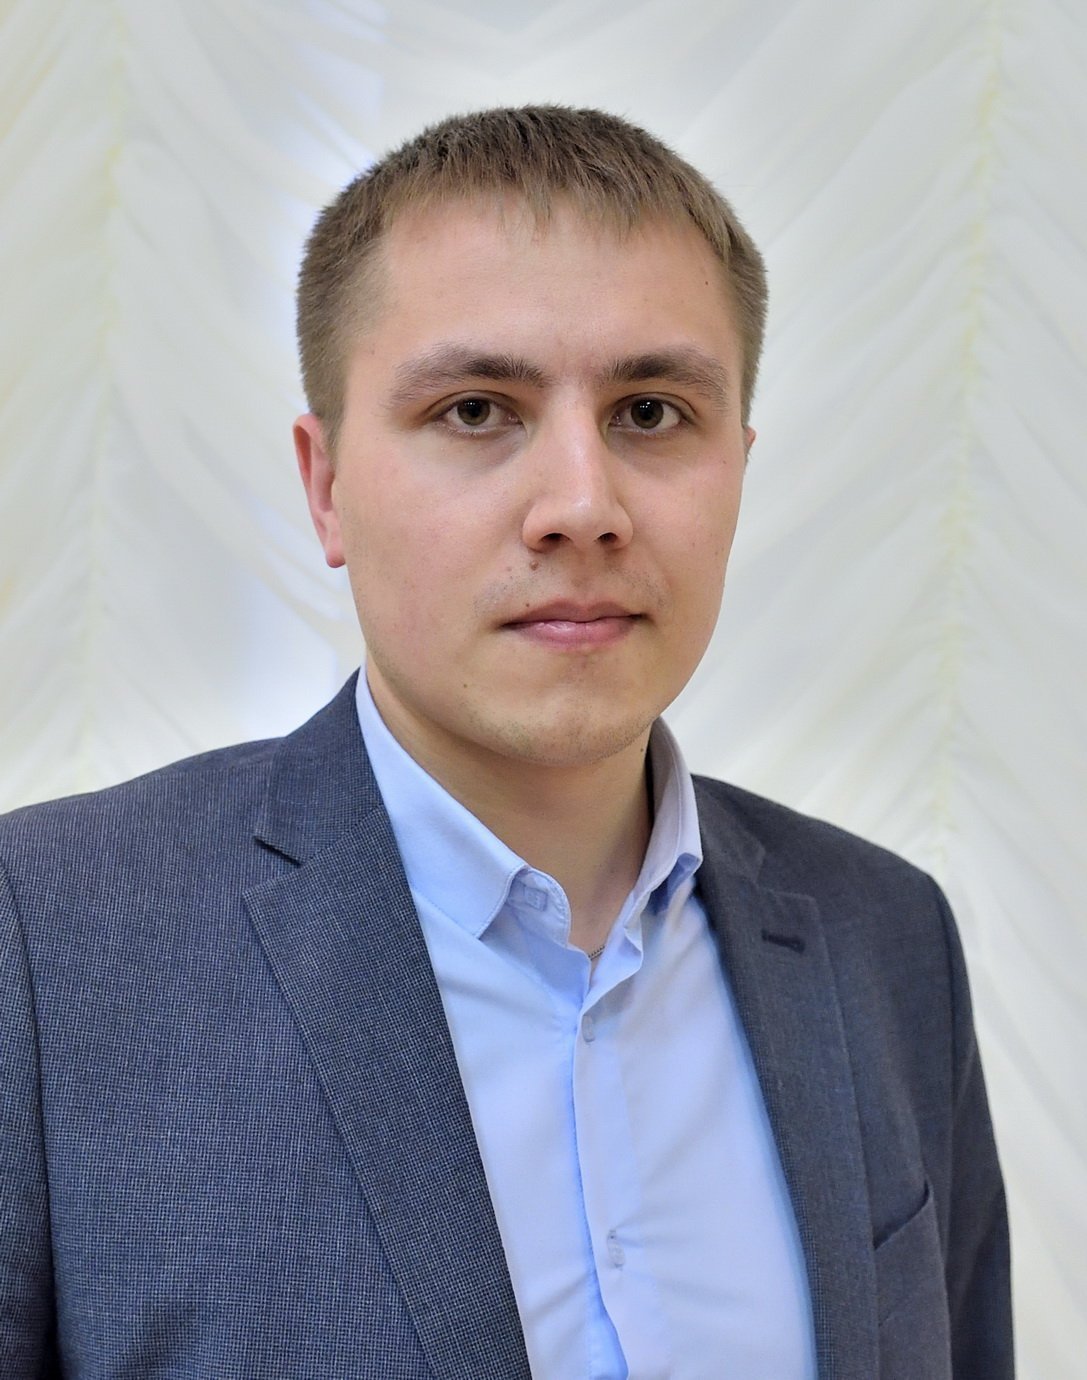 Александр Евсеев стал членом Общественной палаты России от Удмуртии